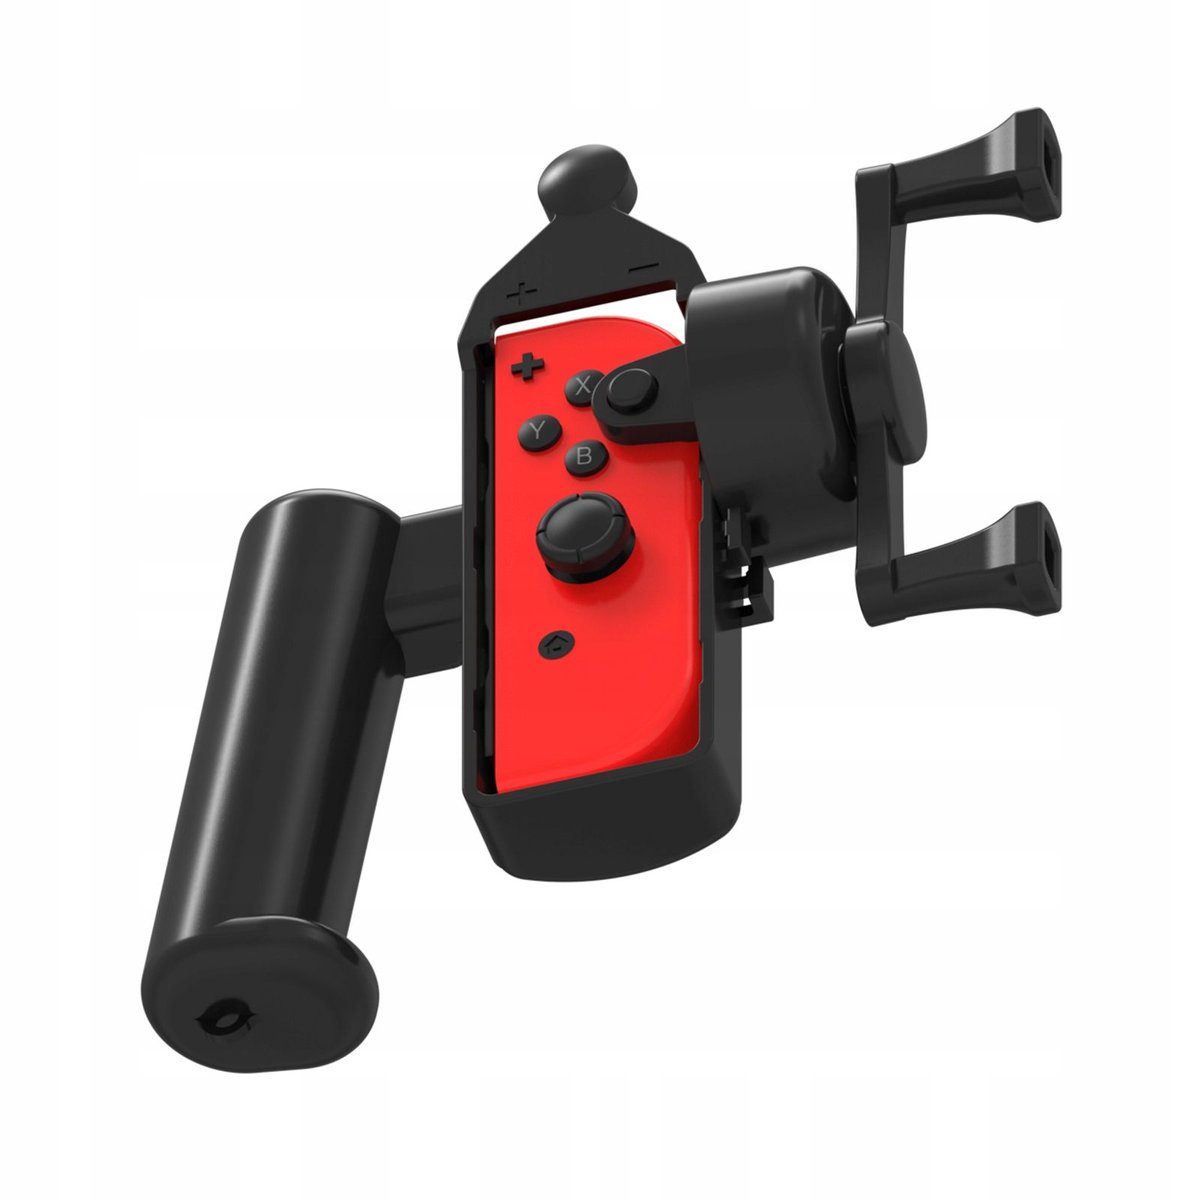 Zdjęcia - Gra Nintendo Uchwyt Wędka Do Joy-con  Switch / Switch Oled Do  Ace Angler / 